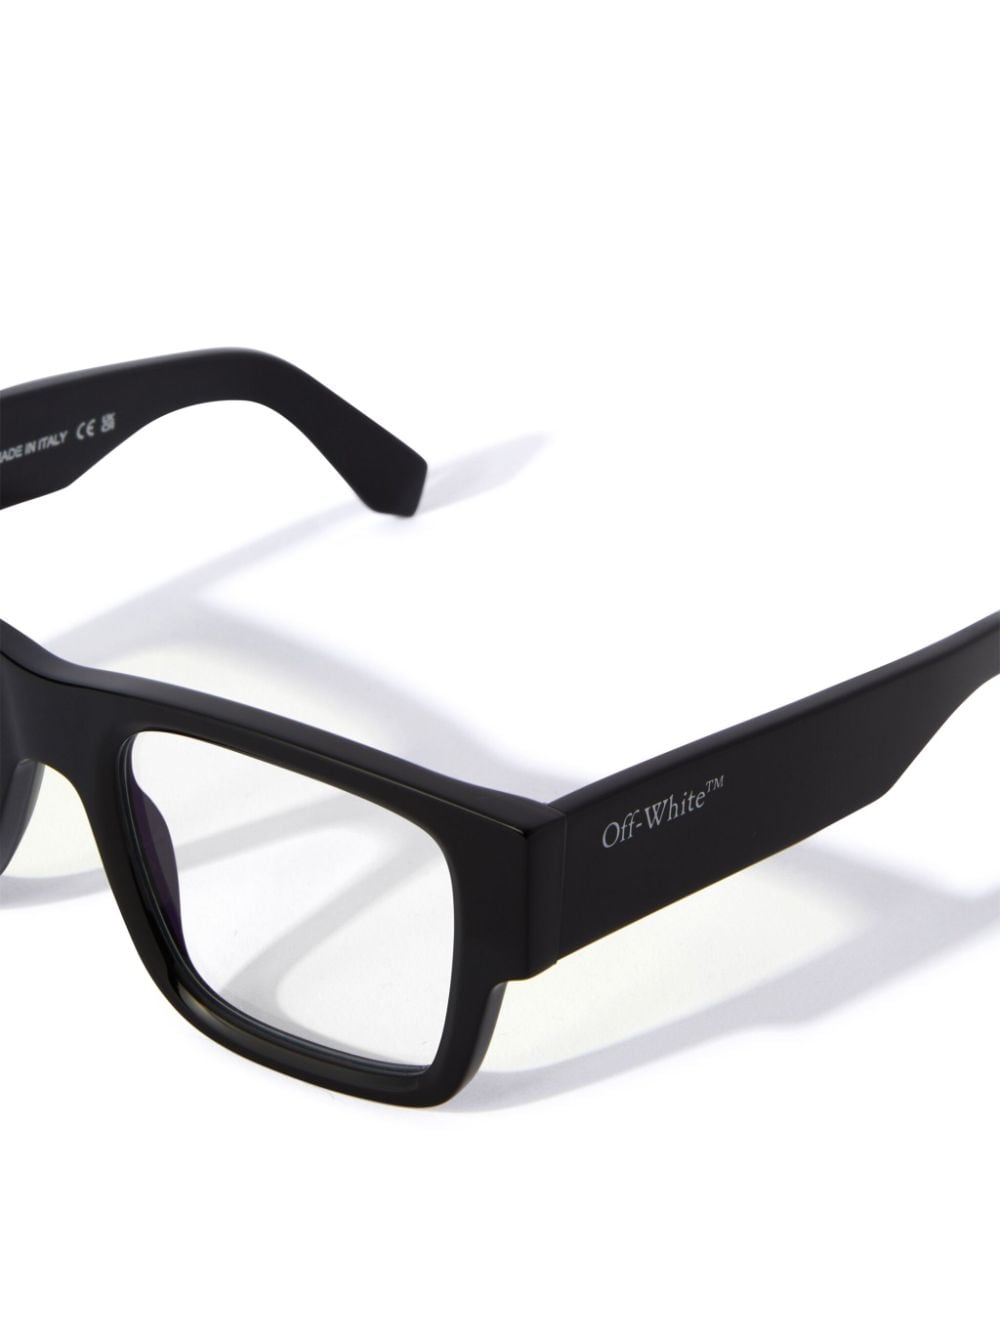 Off-White Optical Style 40 bril met vierkant montuur - Zwart